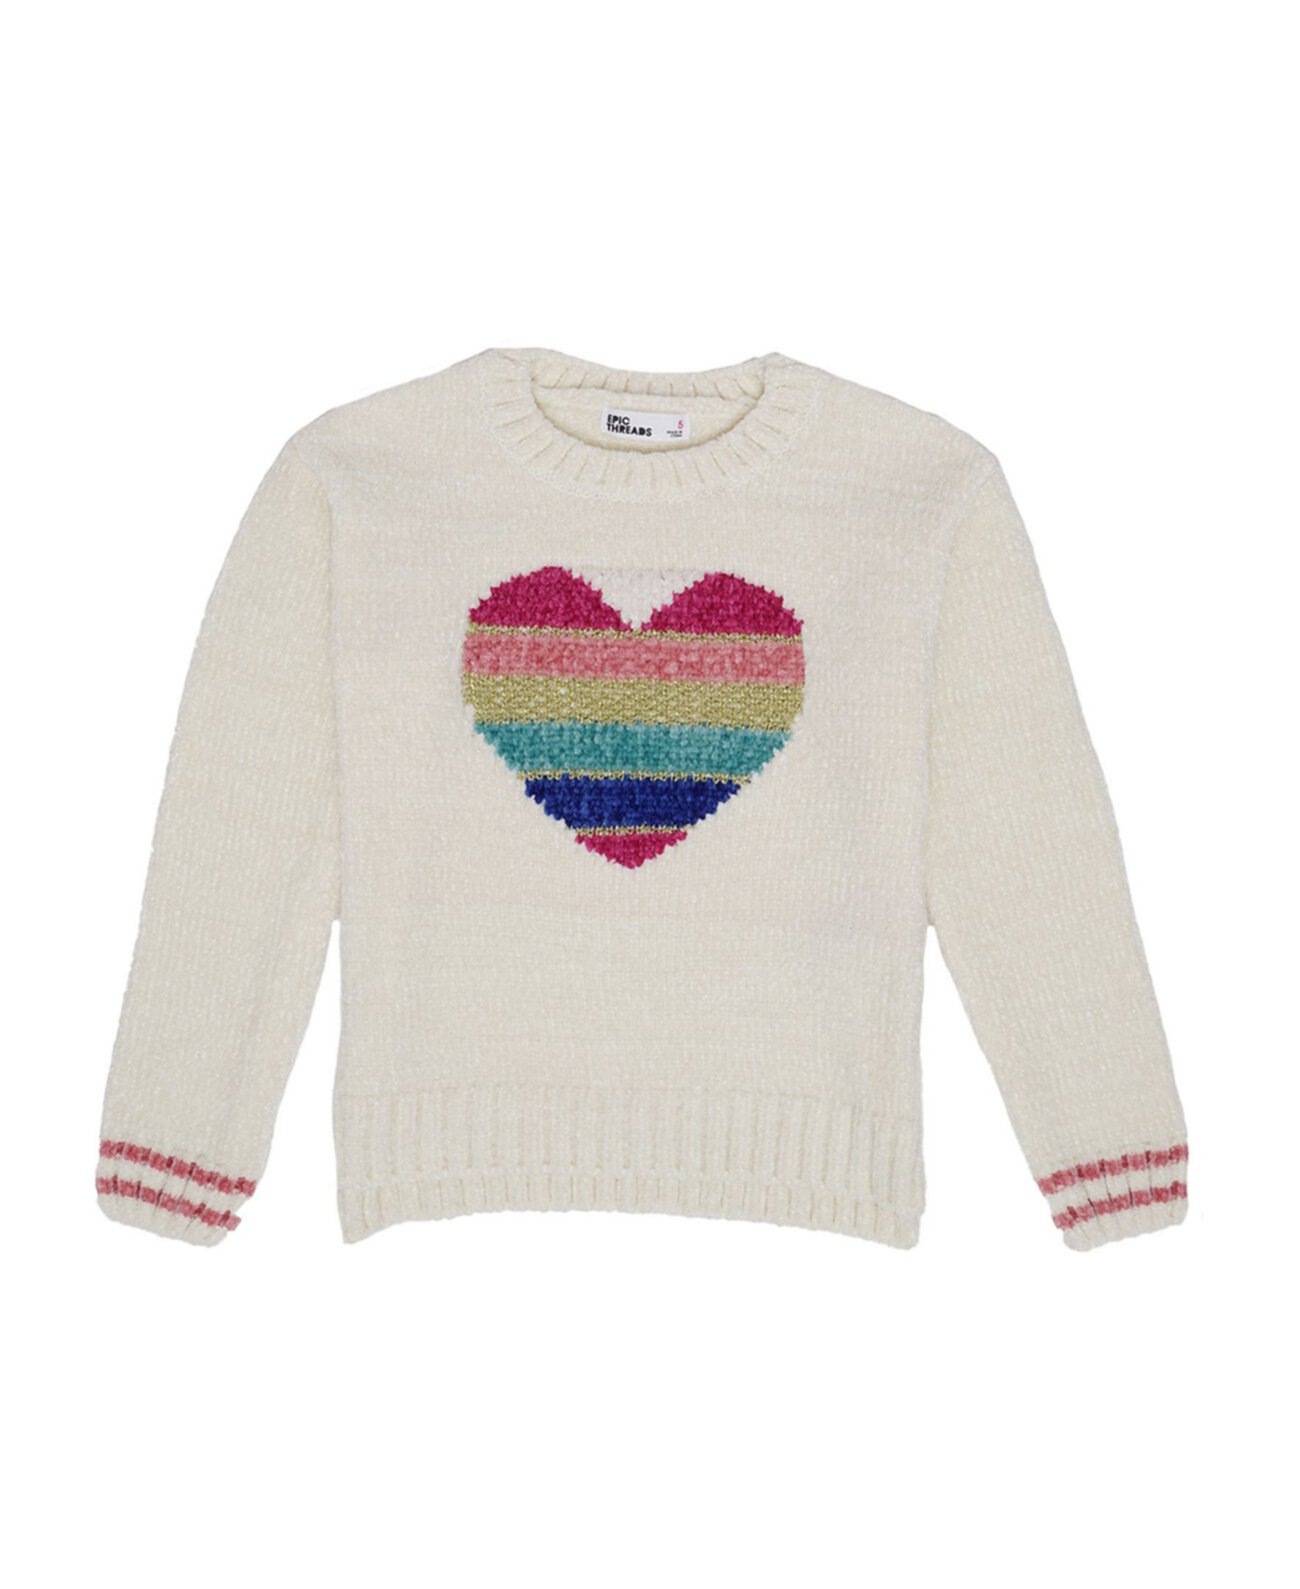 Вязаный свитер с рисунком радуги и сердца для маленьких девочек Epic Threads